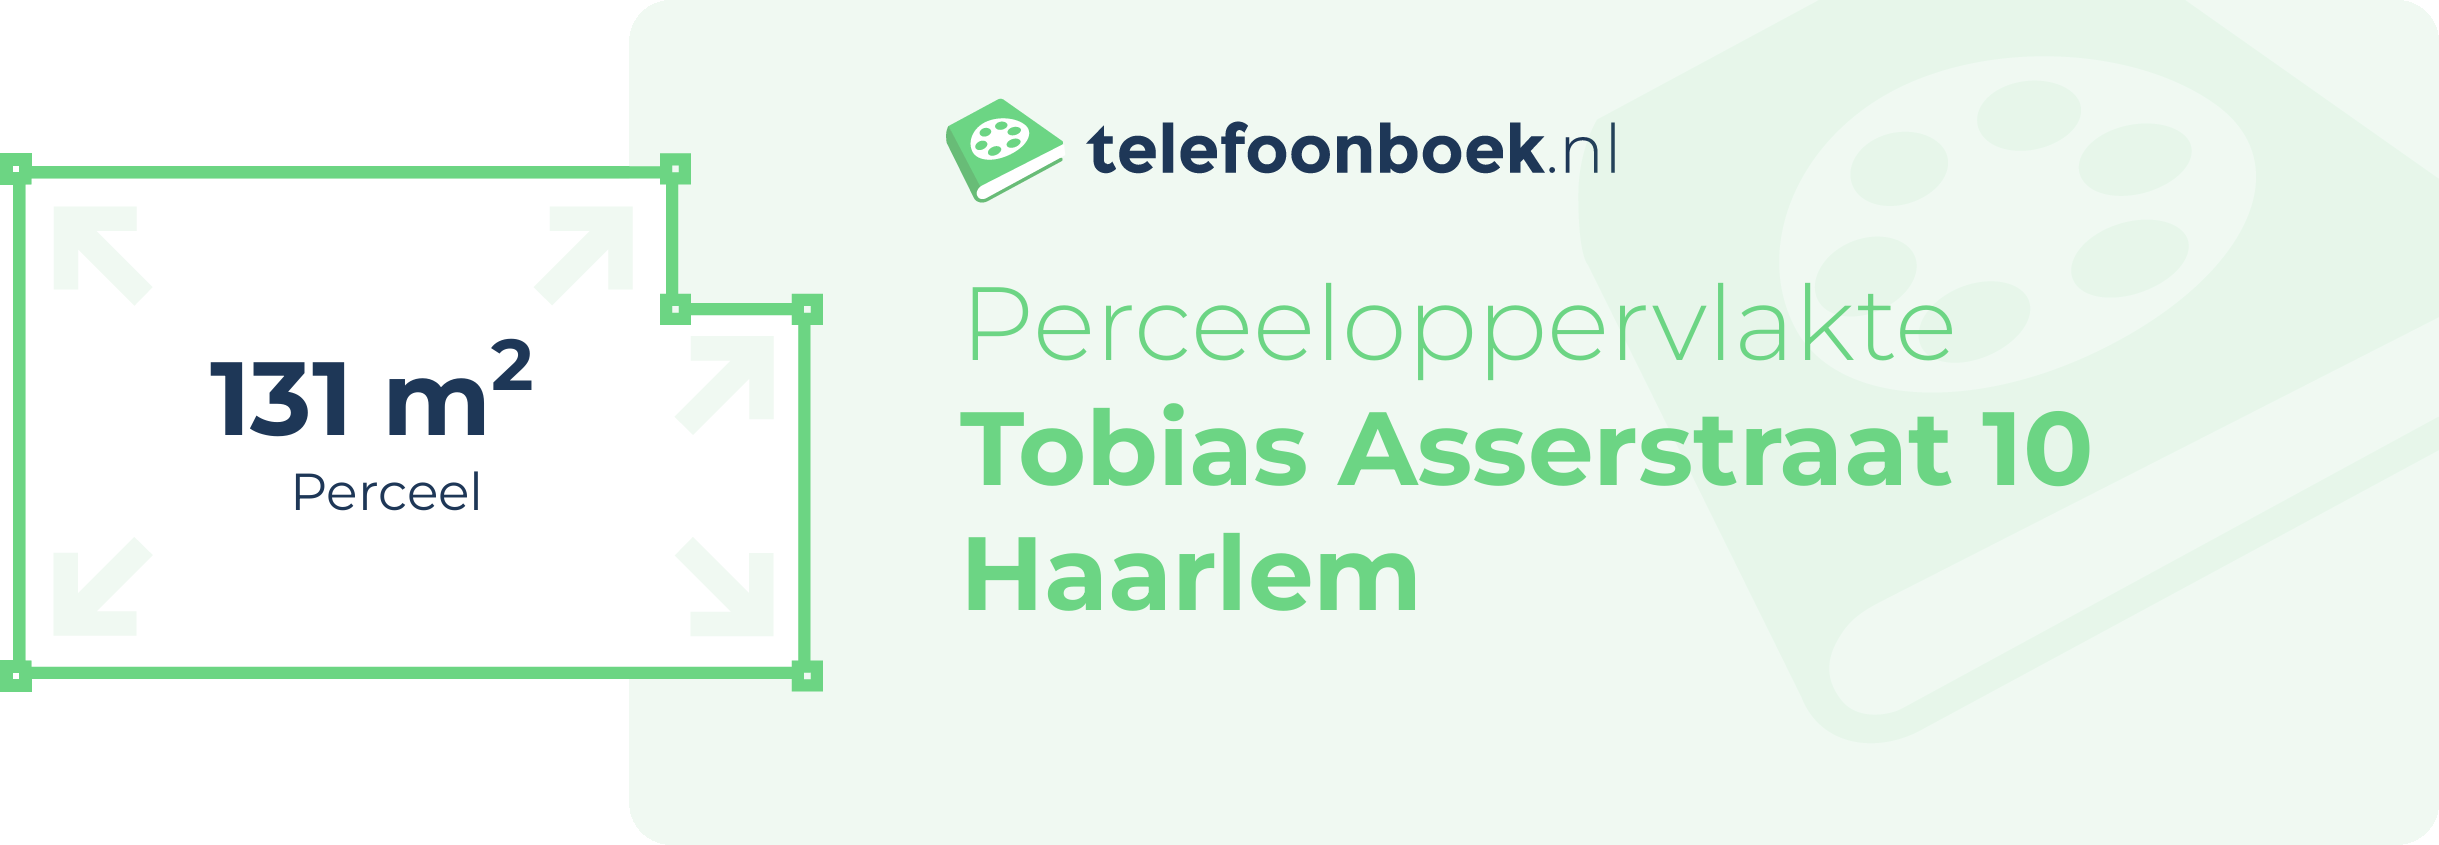 Perceeloppervlakte Tobias Asserstraat 10 Haarlem